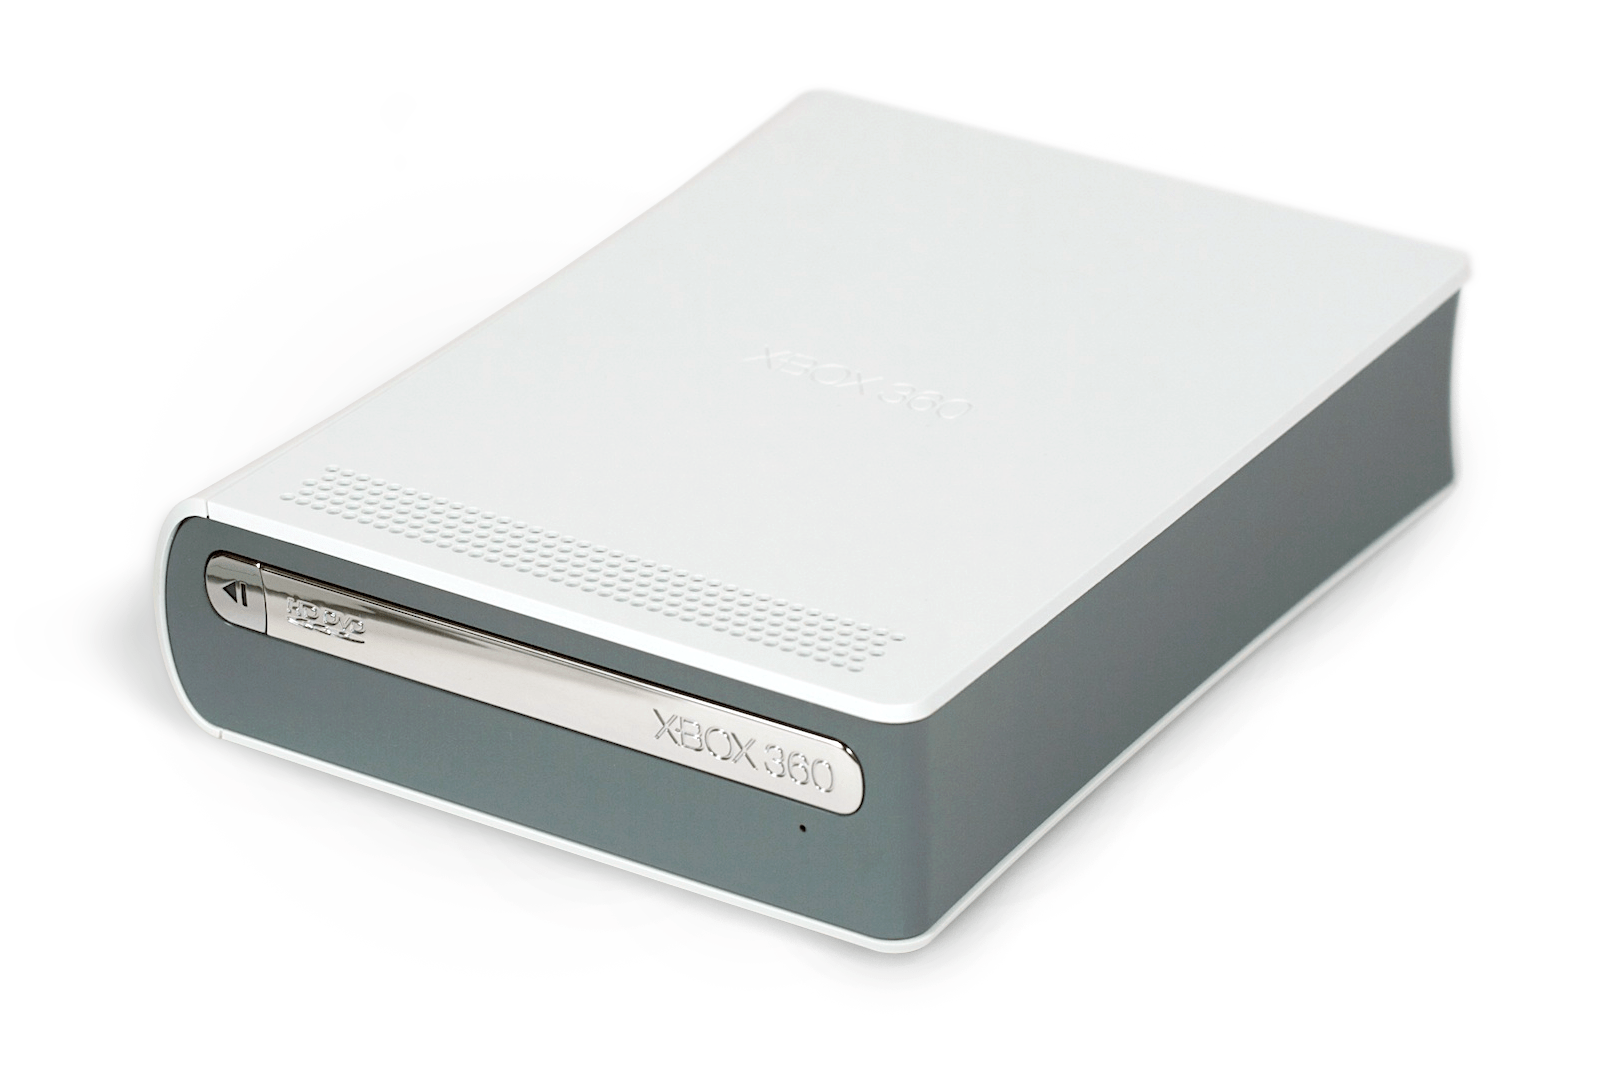 Das externe HD-DVD-Laufwerk für die Xbox 360